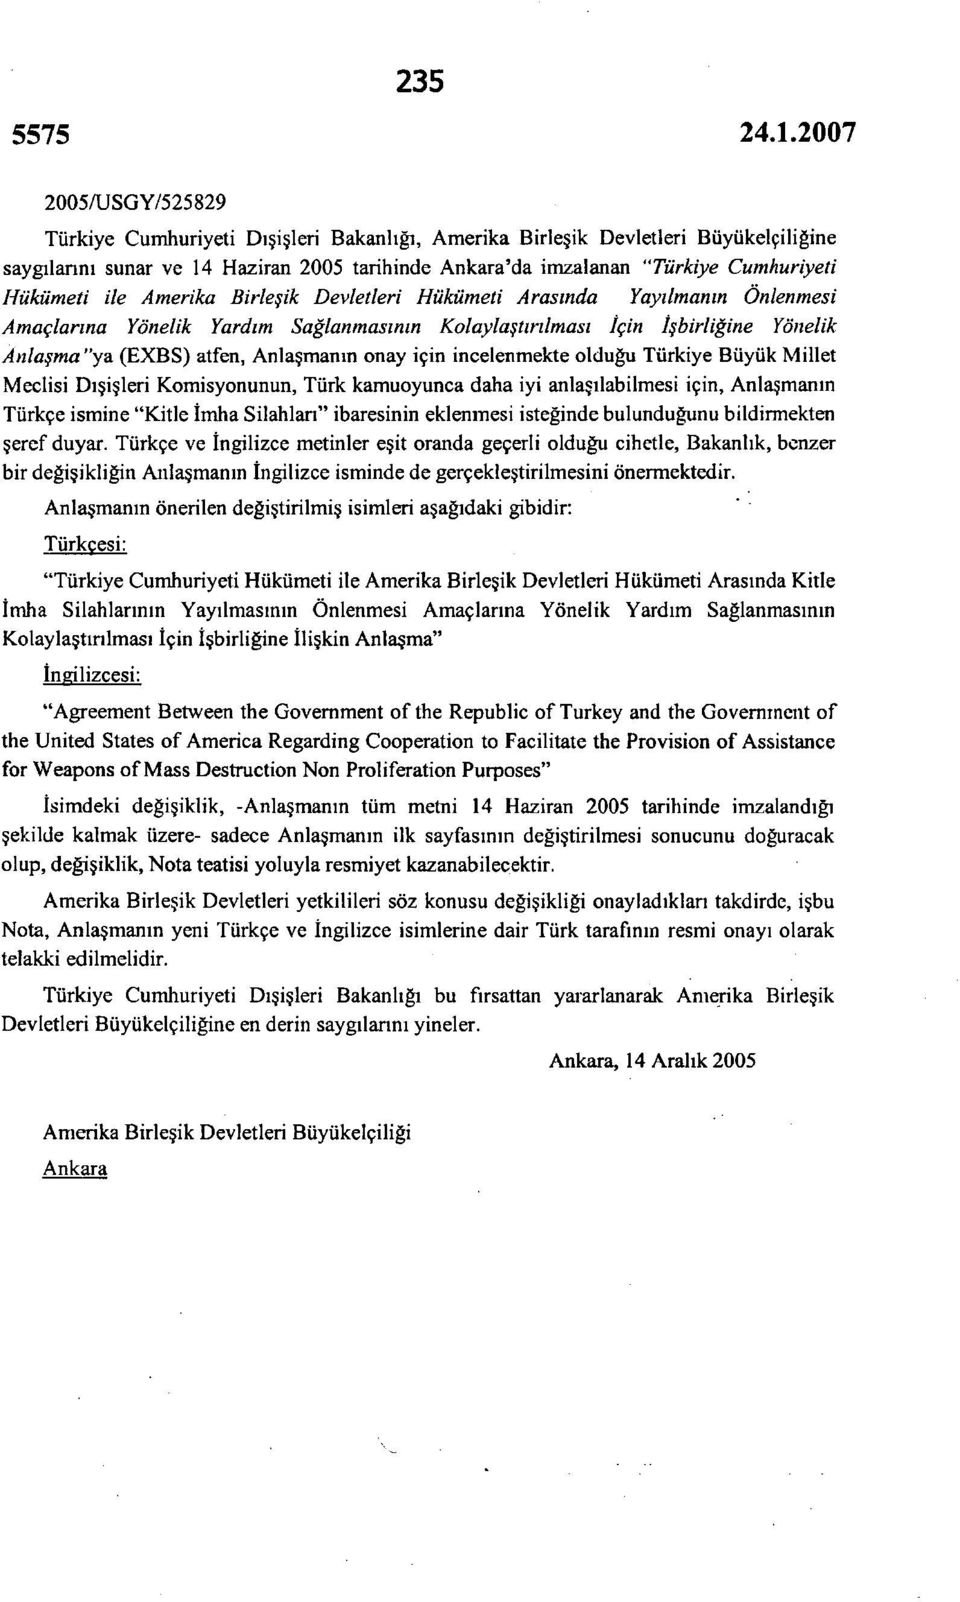 onay için incelenmekte olduğu Türkiye Büyük Millet Meclisi Dışişleri Komisyonunun, Türk kamuoyunca daha iyi anlaşılabilmesi için, Anlaşmanın Türkçe ismine "Kitle İmha Silahlan" ibaresinin eklenmesi